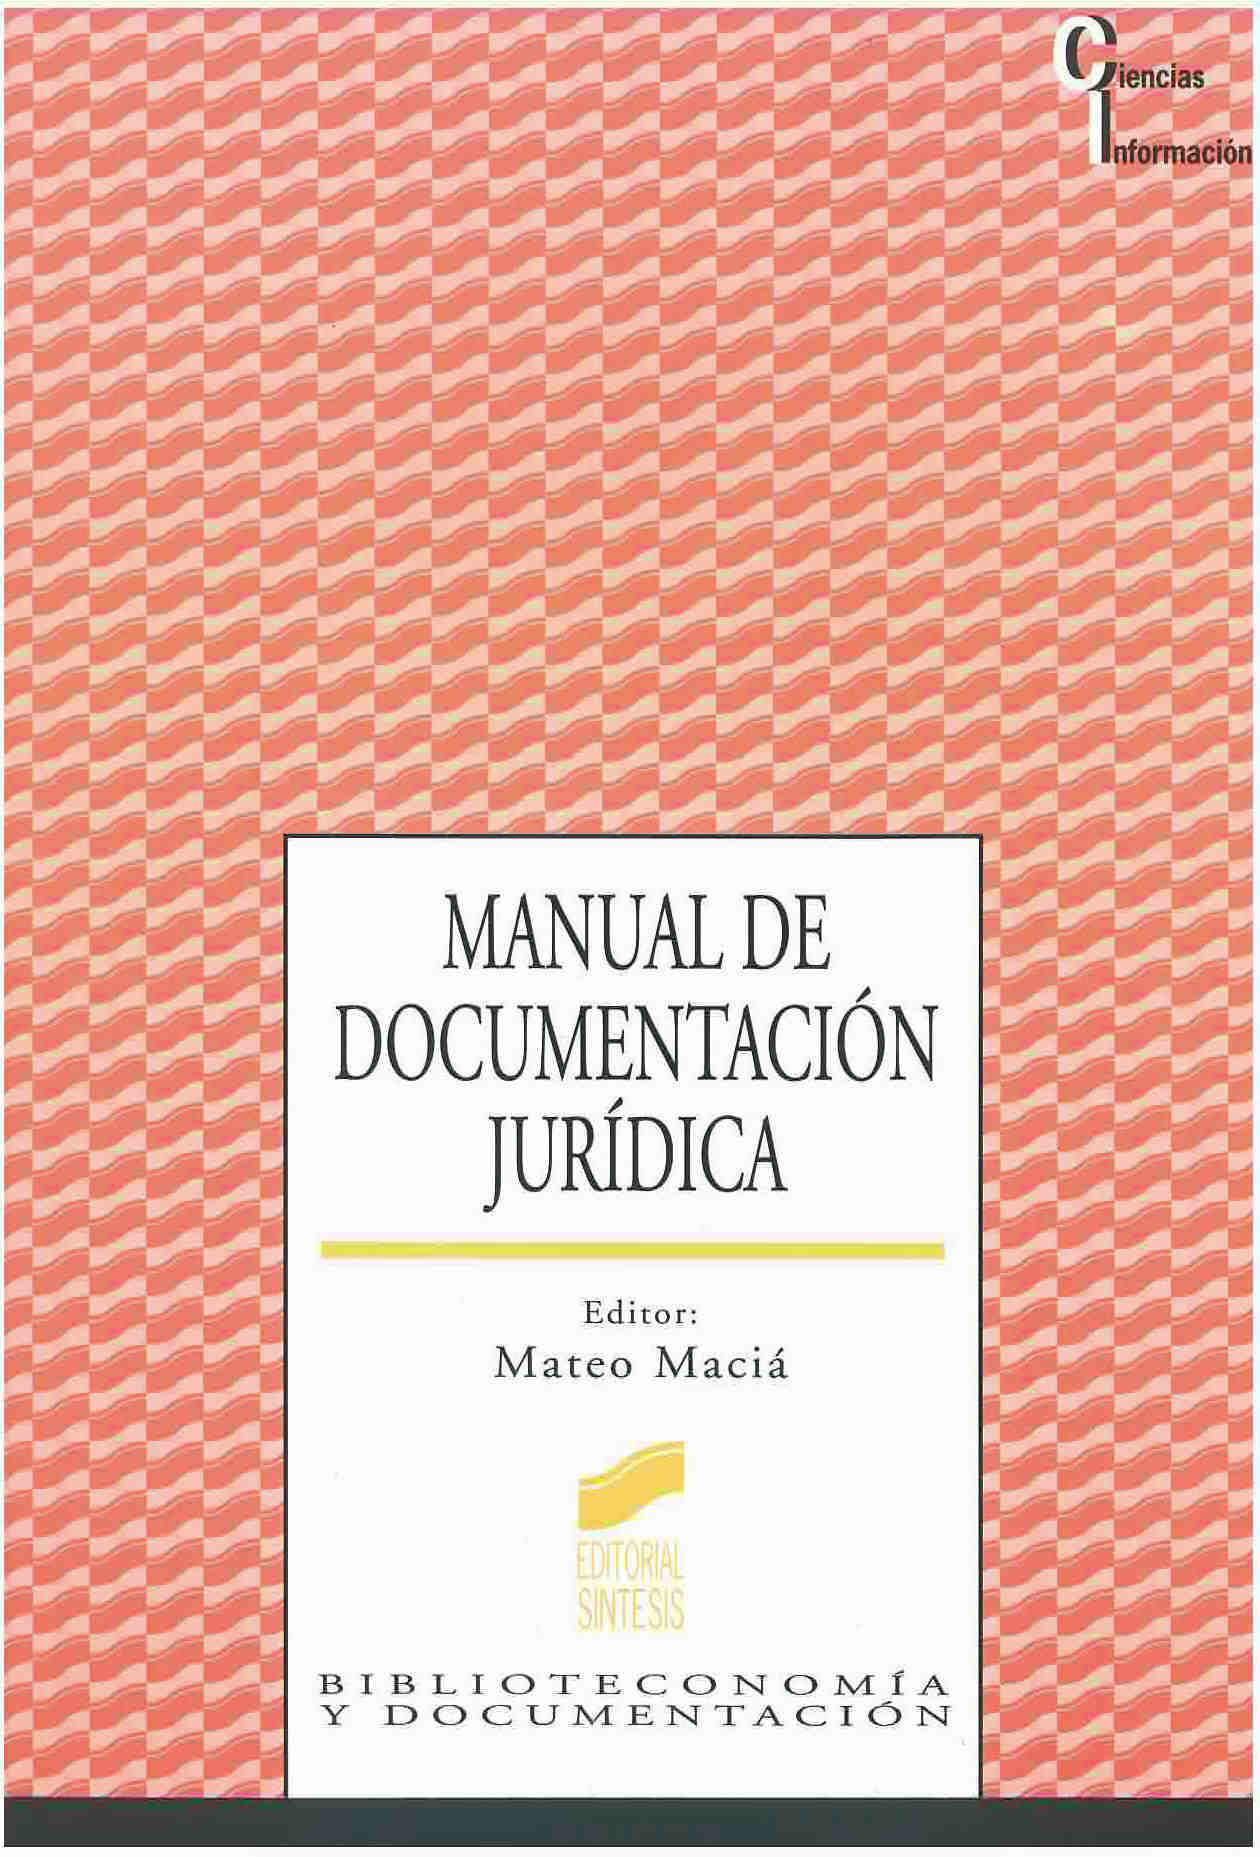 Manual de documentación jurídica